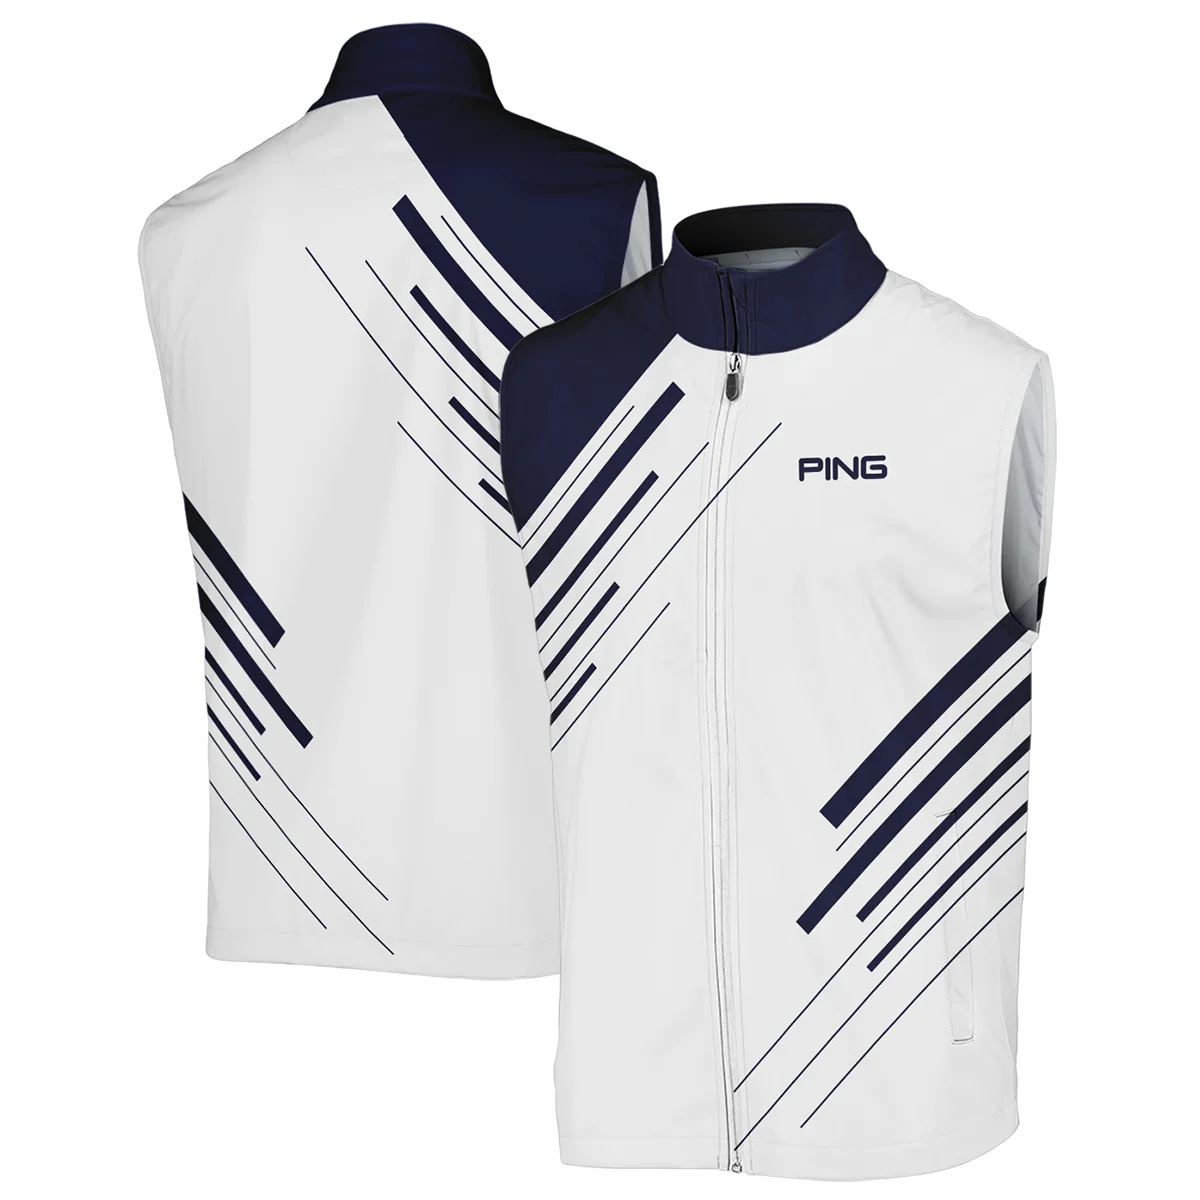 Ping 124th U.S. Open Pinehurst Golf Bomber Jacket Striped Pattern Dark Blue White All Over Print Bomber Jacket